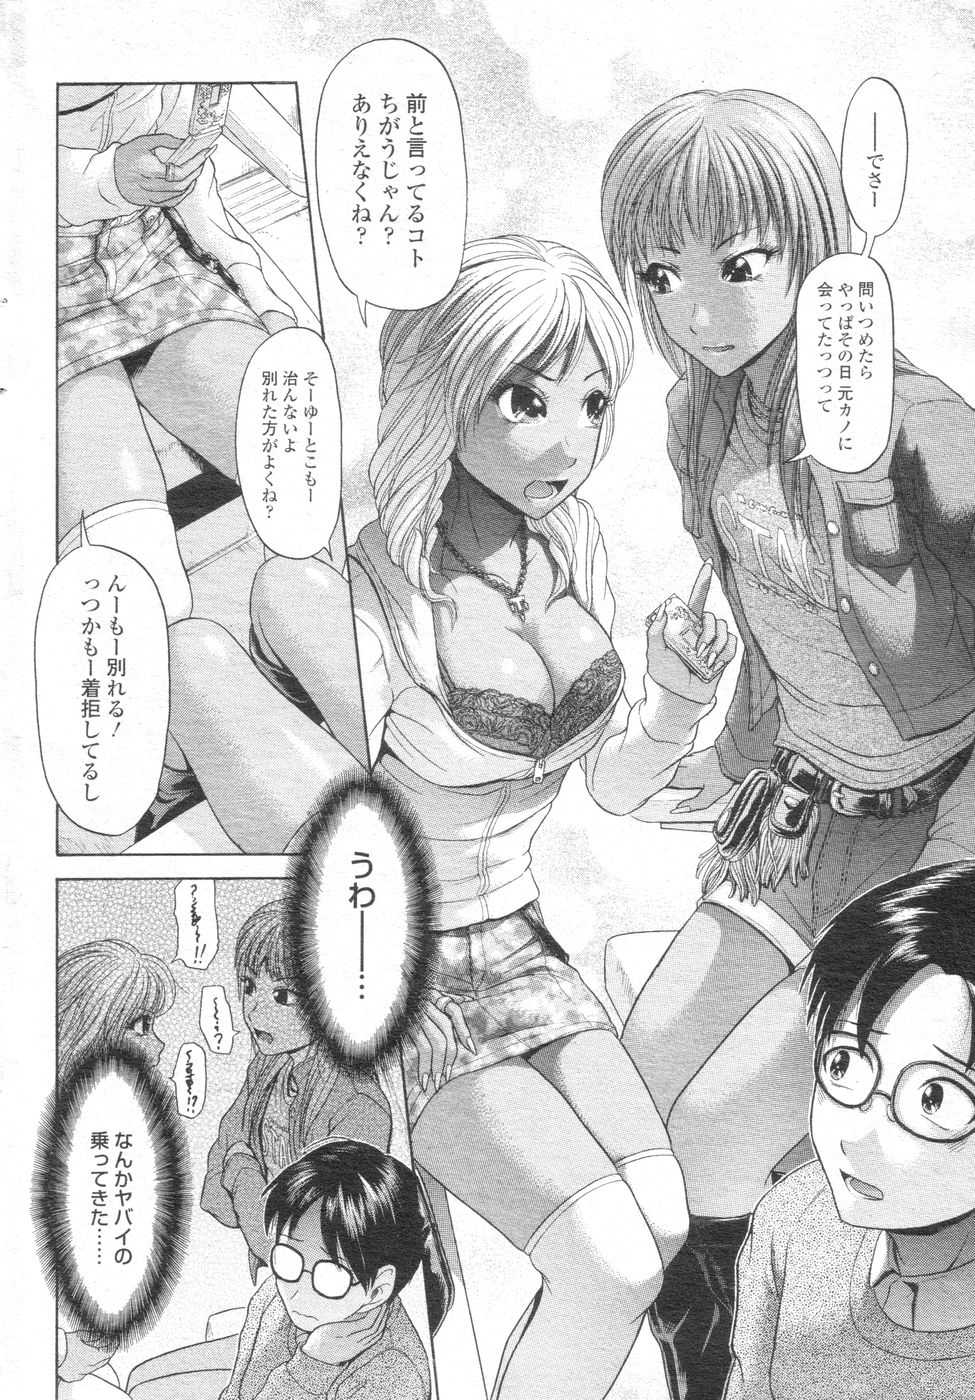 [H-Magazine] Chobekomi Vol.07 Jun. 2007 (Tsukitaki) - Page 19